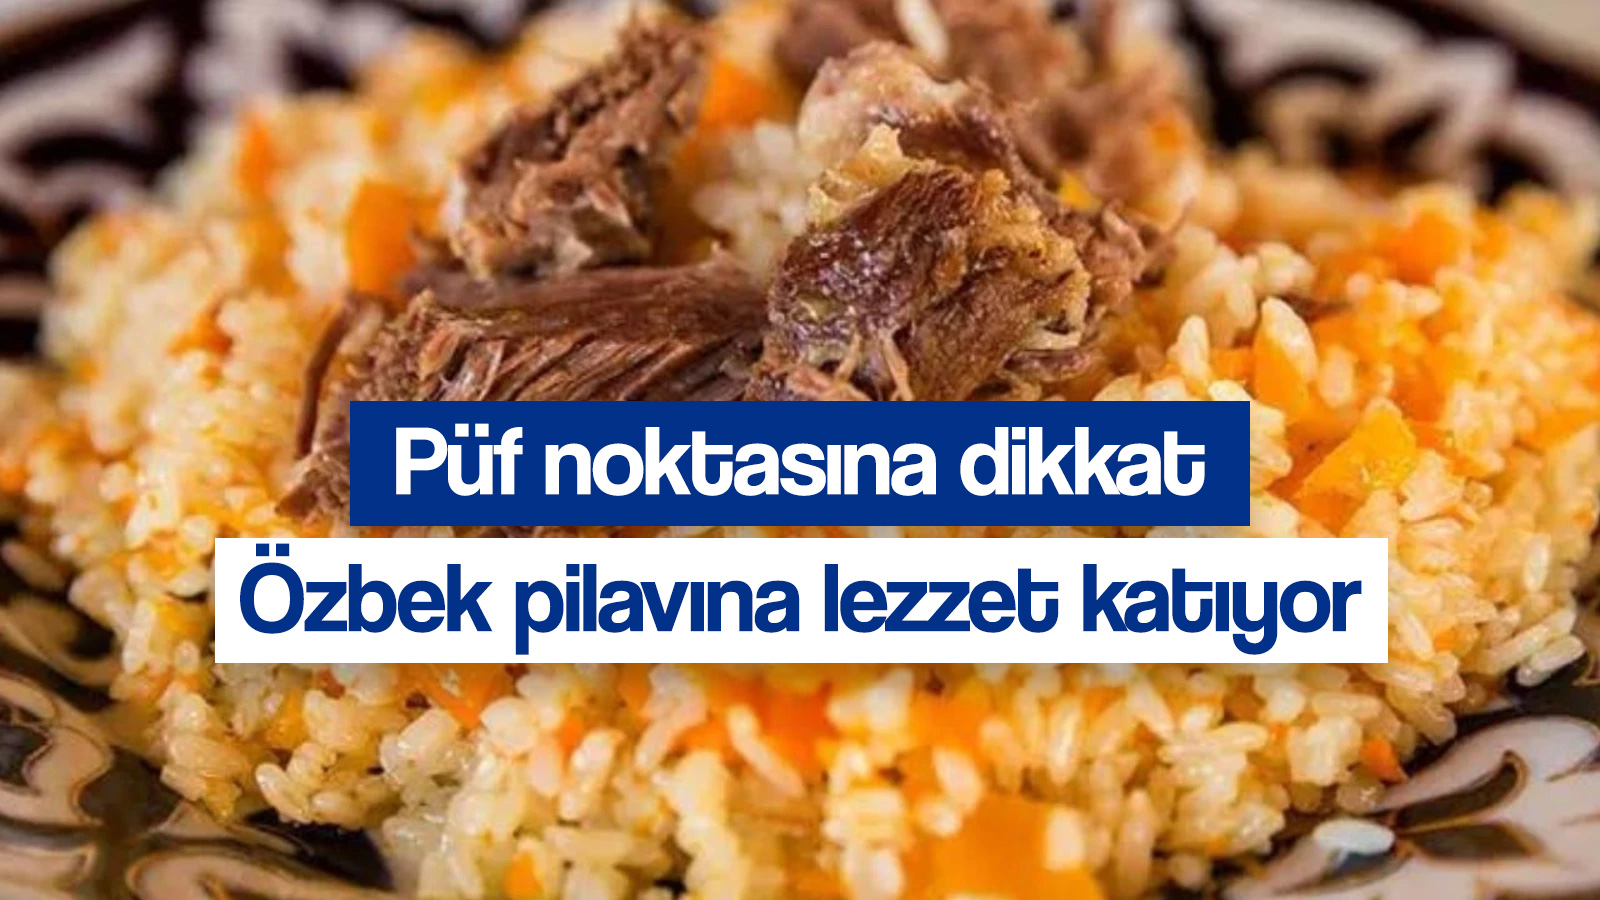 Özbek pilavı tarifi nasıl yapılır? Baharatların lezzet dansı yaptığı Özbek pilavının püf noktaları